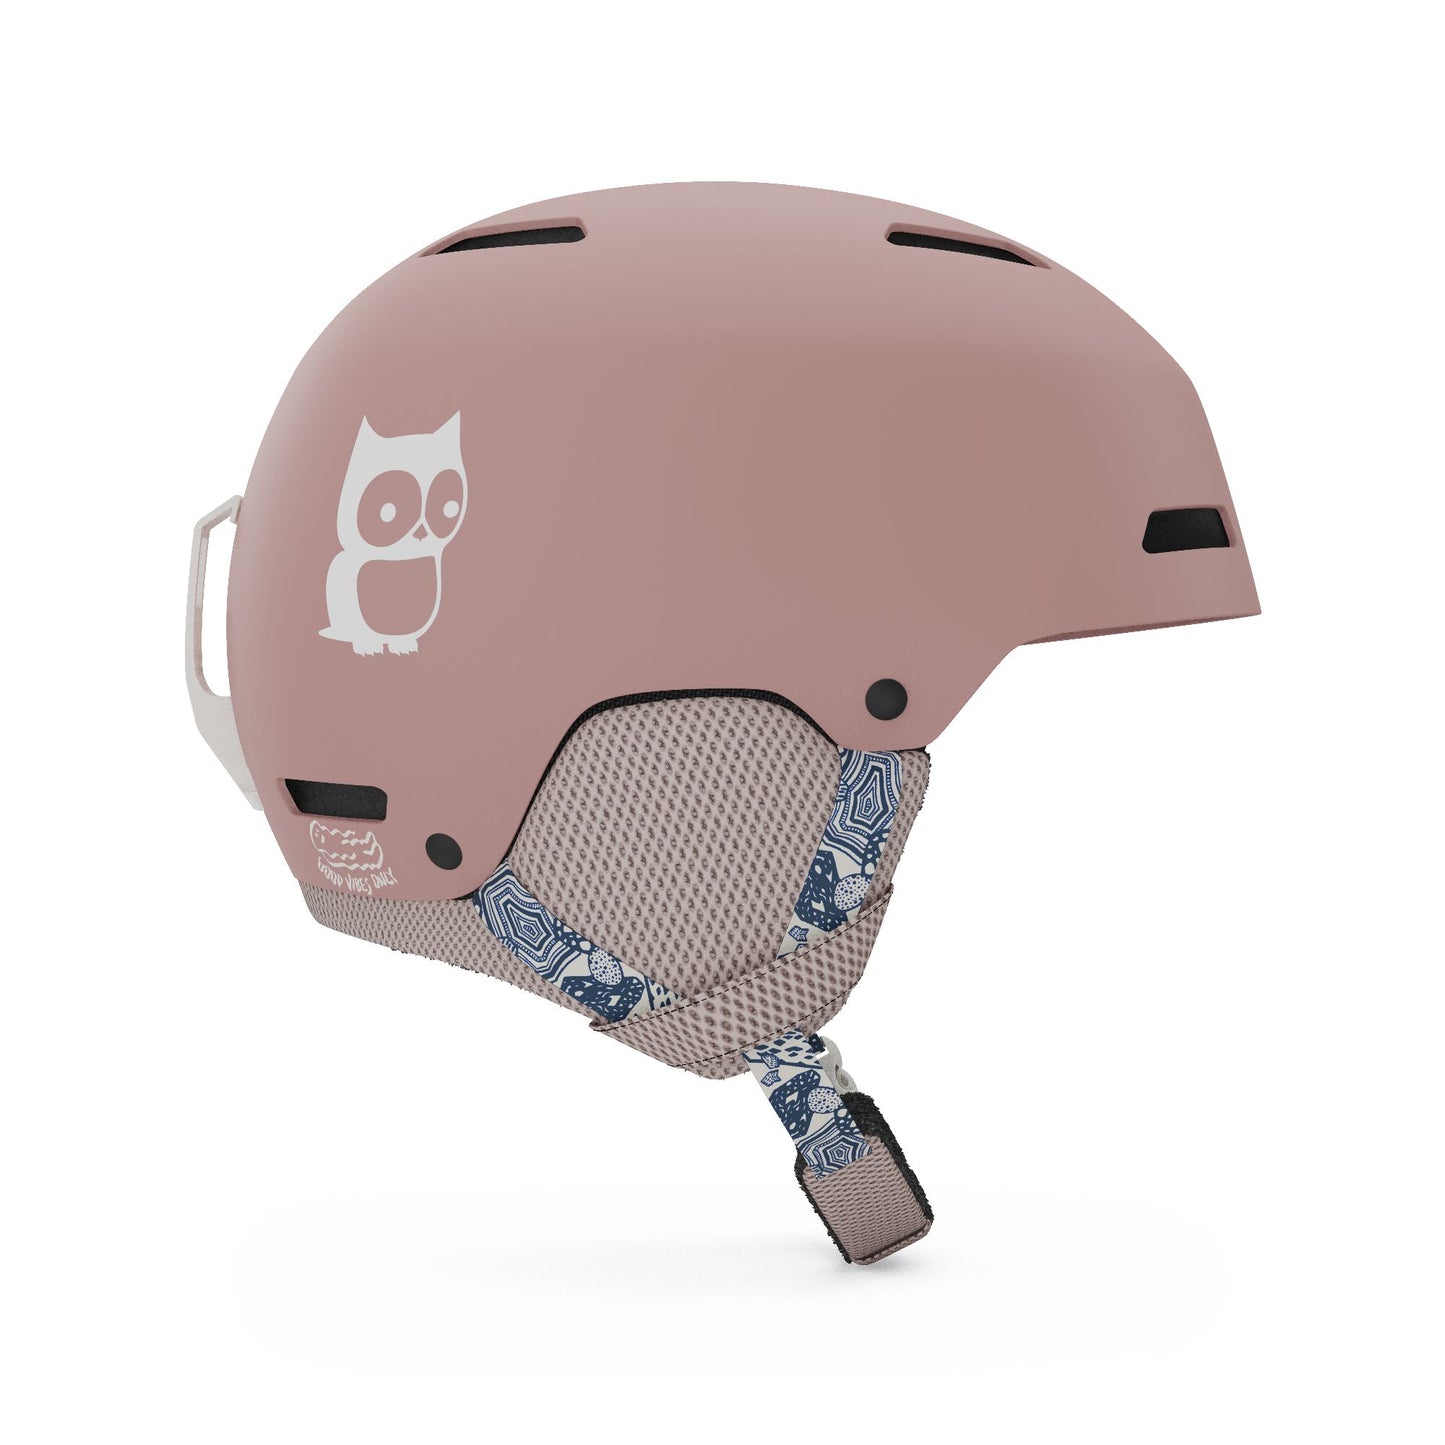 Giro Youth Crue MIPS Helmet Namuk Dark Rose Snow Helmets